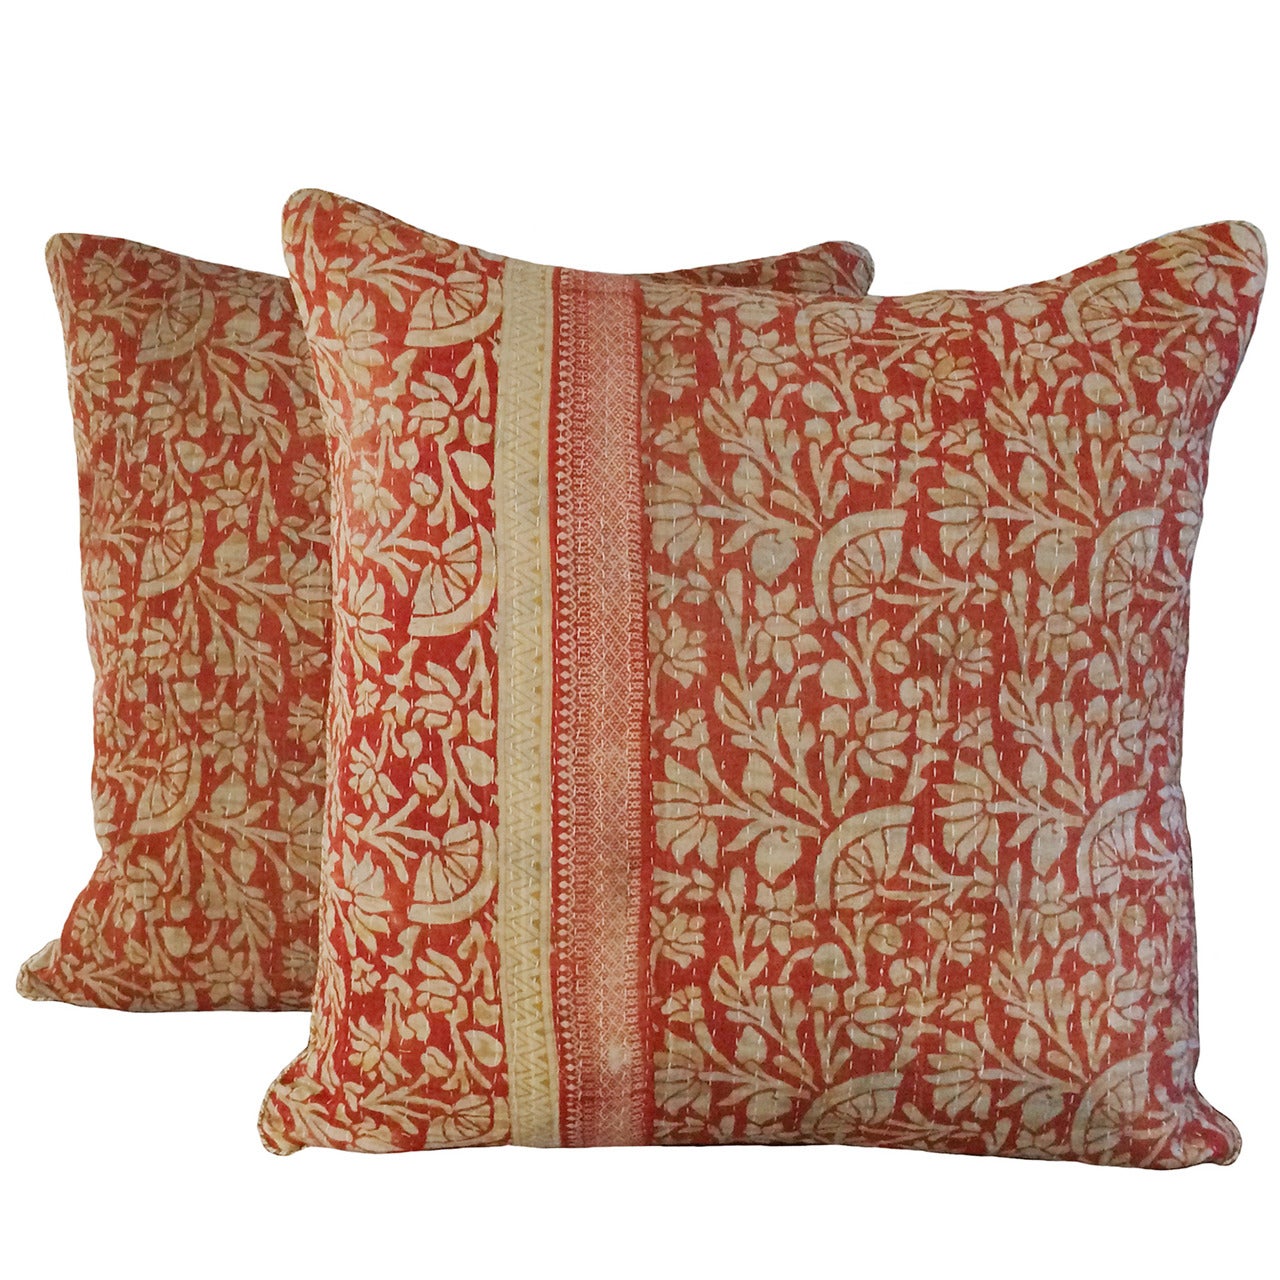 Pair of Vintage Kantha Pillows